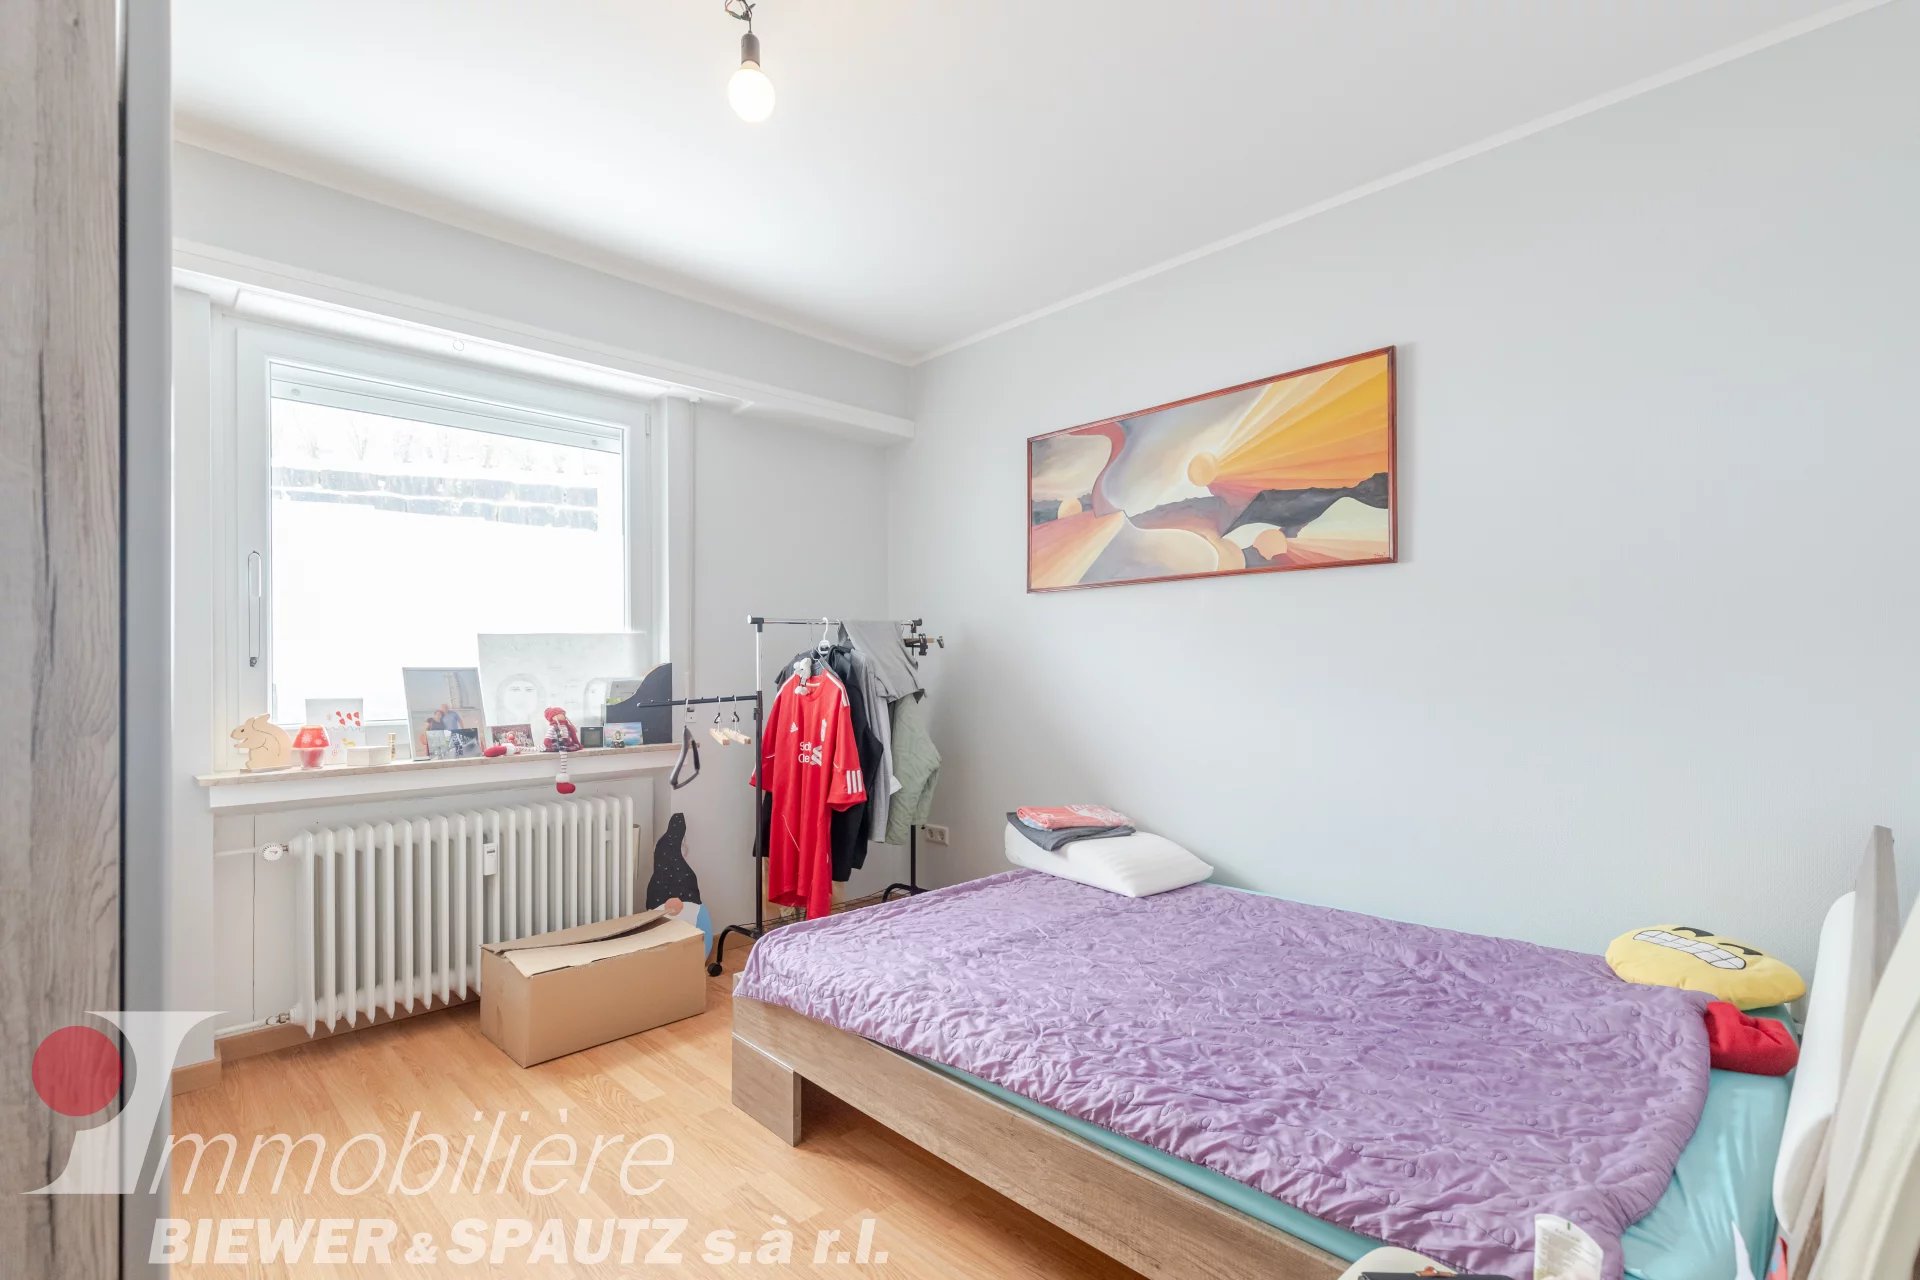 SOLD - 2 bedroom flat in Junglinster